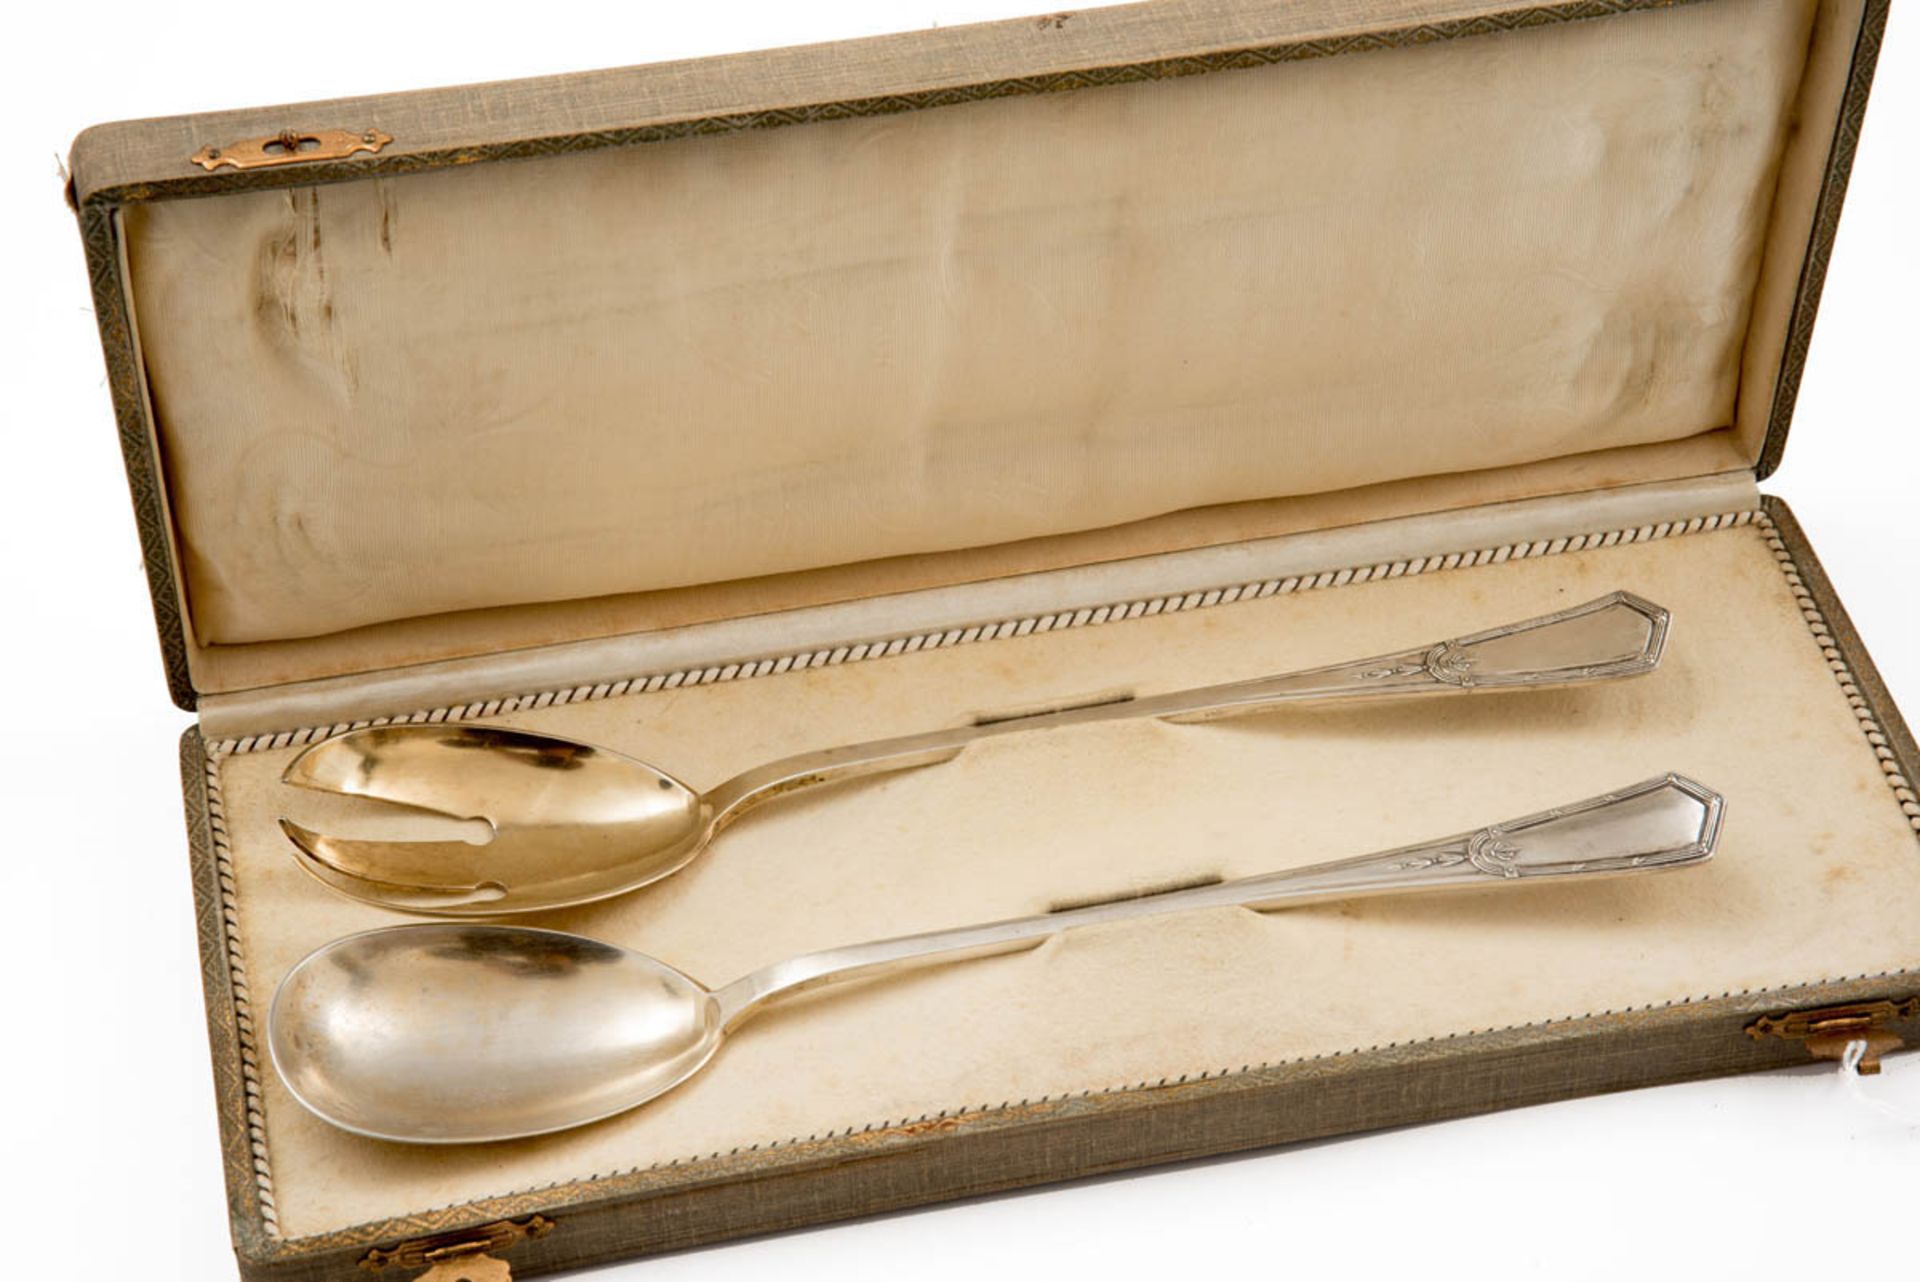 Salatbesteck, Wilhelm Binder, Gmünd, um 1900 800er Silber, Laffen vergoldet. Ovale Laffen, schlanker